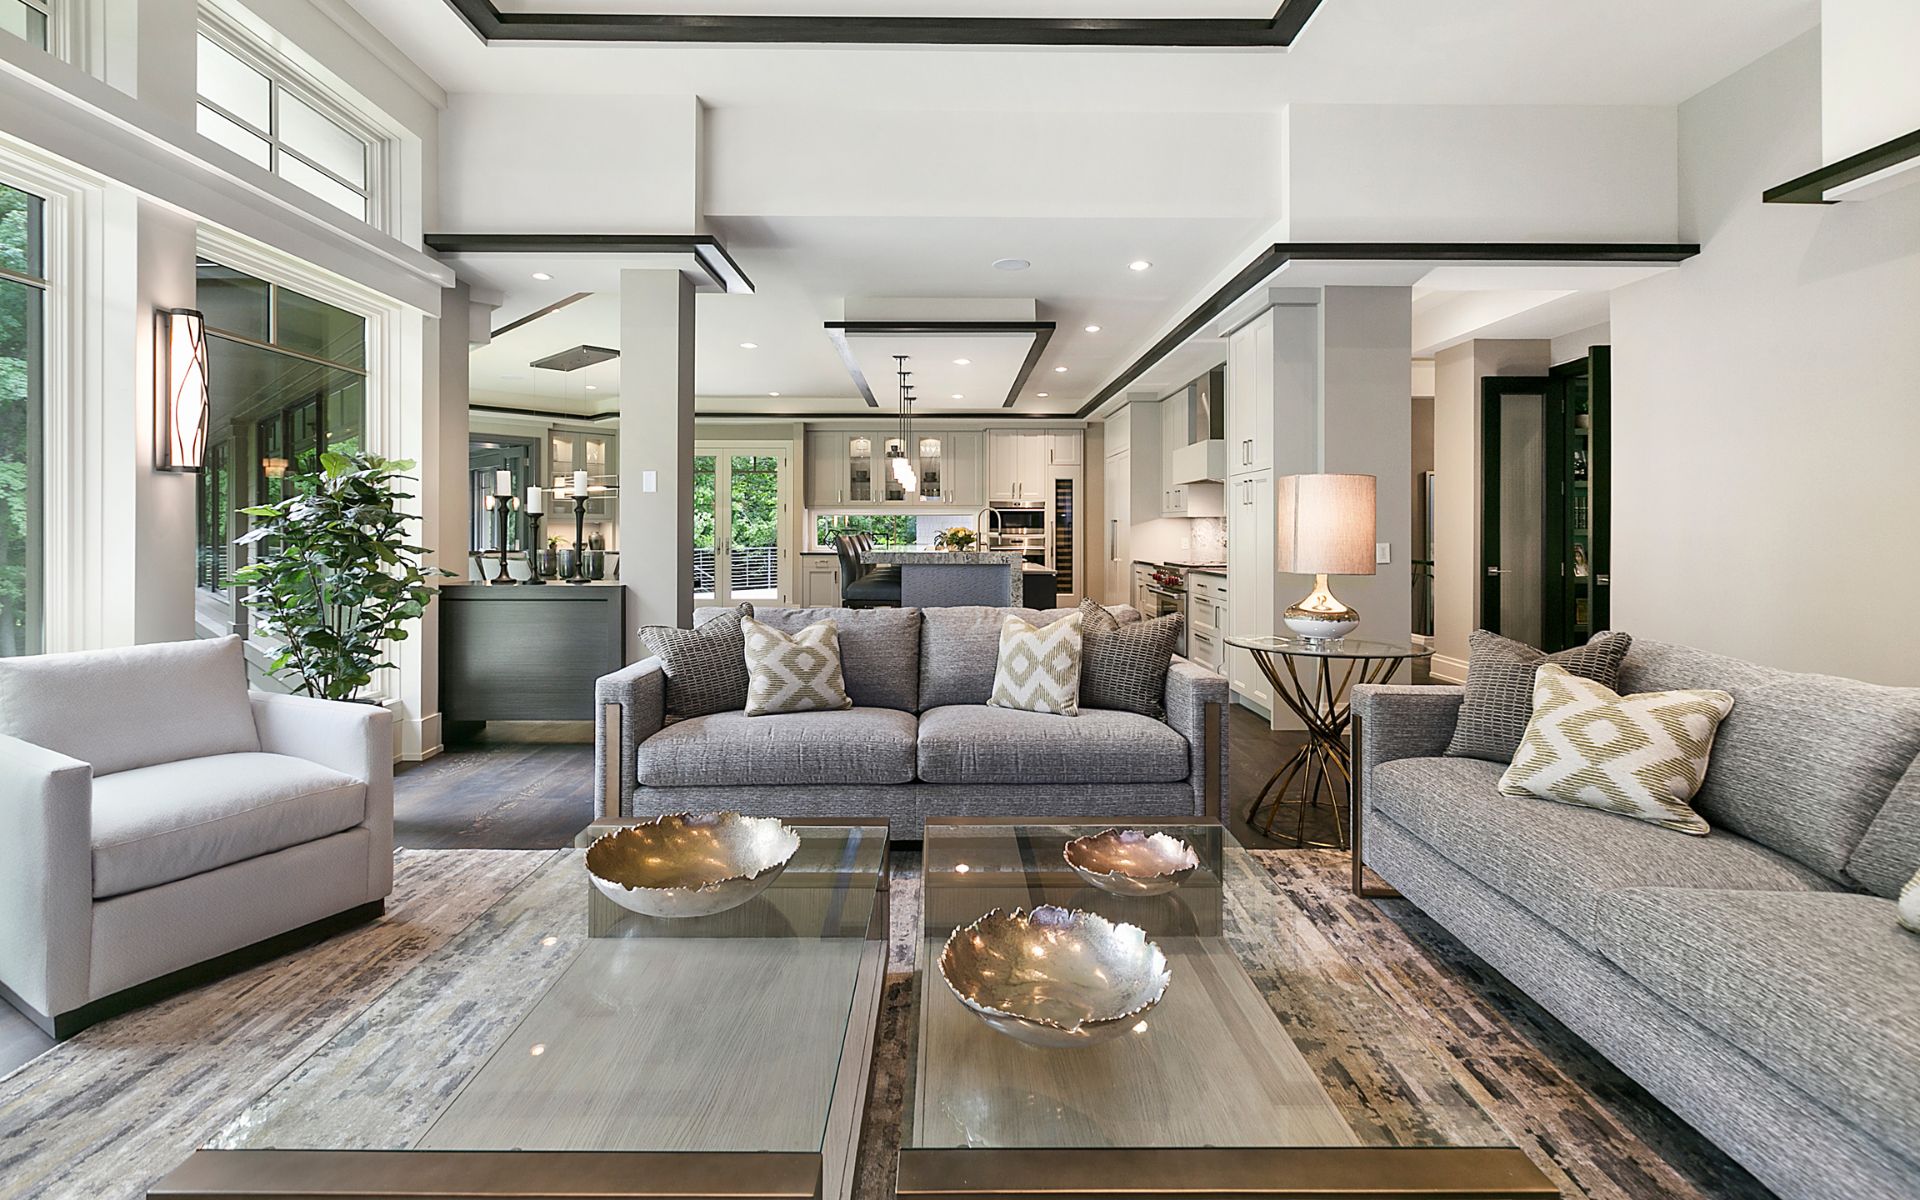 Elegant home design with luxury interior